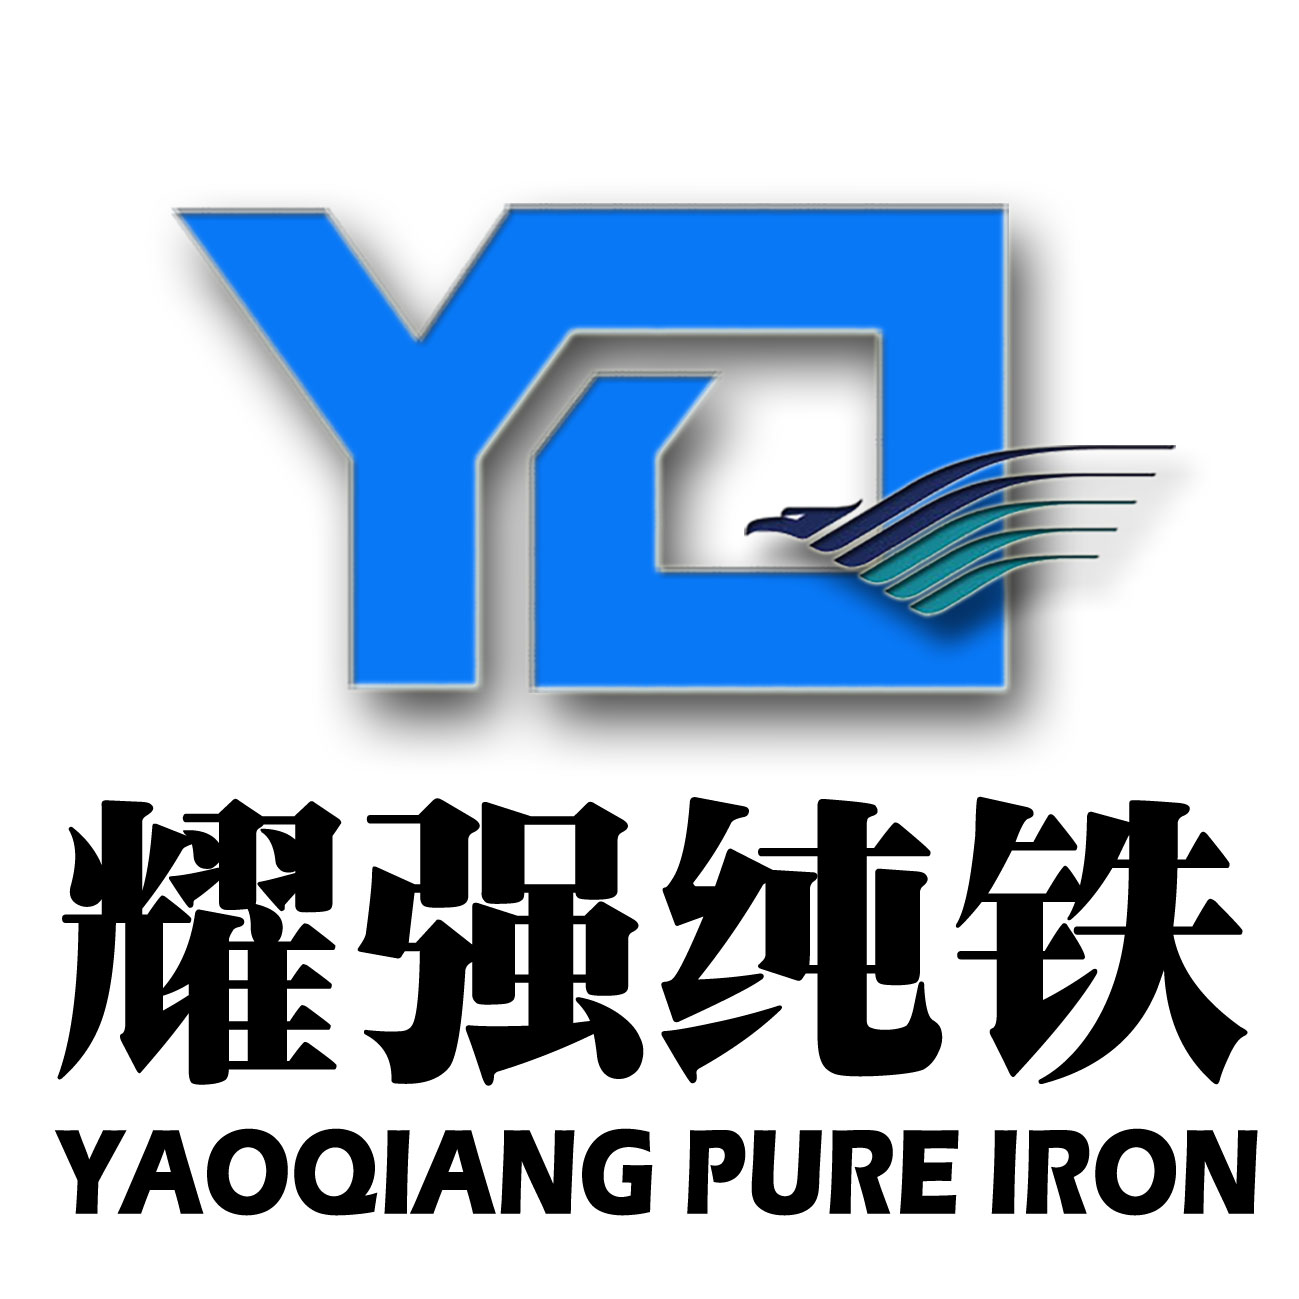 供应高纯度YT01冶炼纯铁，熔炼纯铁，纯铁炉料